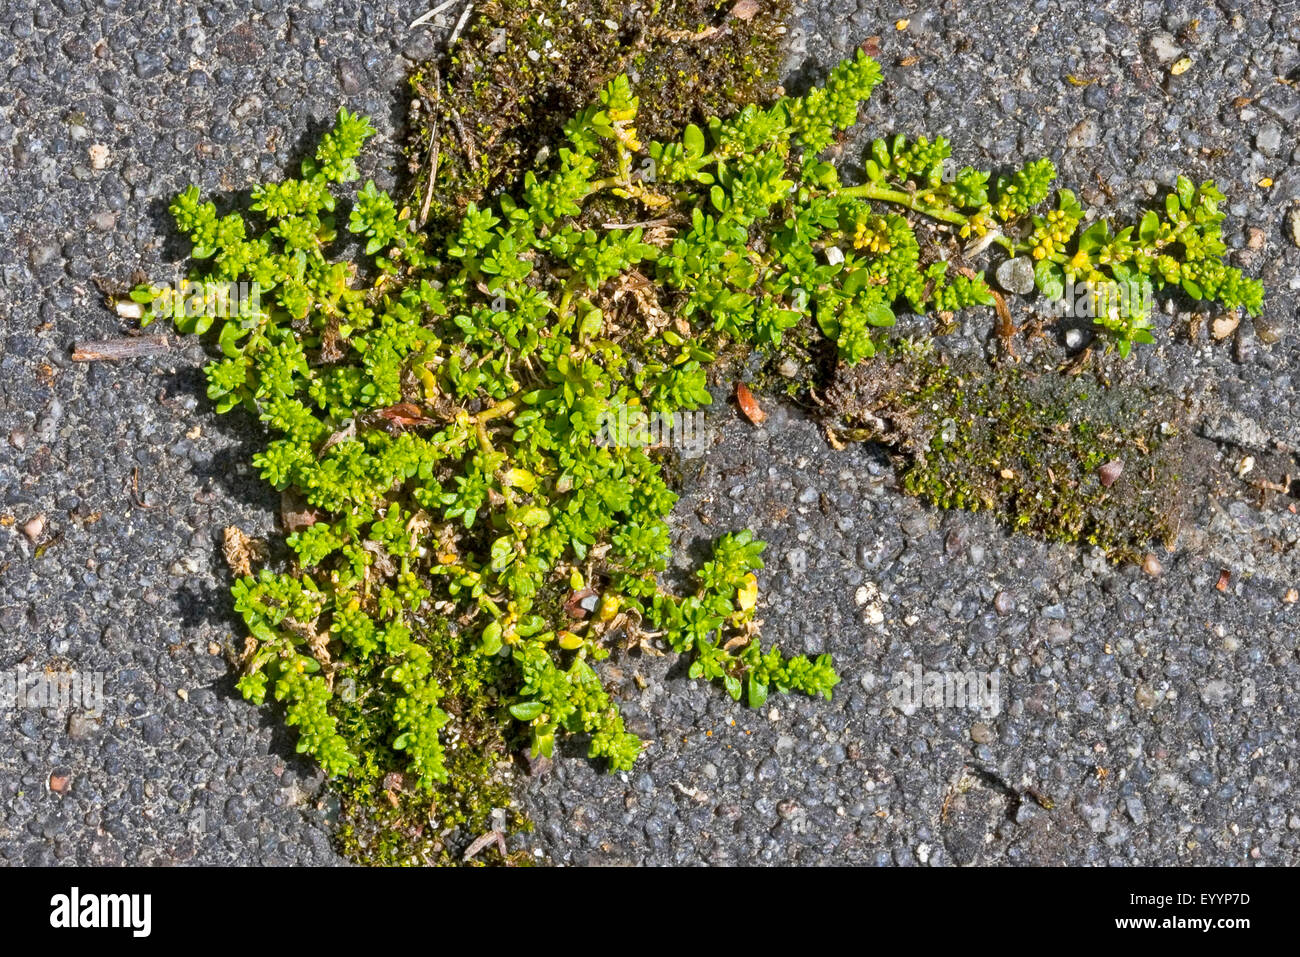 Rupturewort glatt, glatt Burstwort (Herniaria Glabra), auf einem Bürgersteig, Deutschland Stockfoto